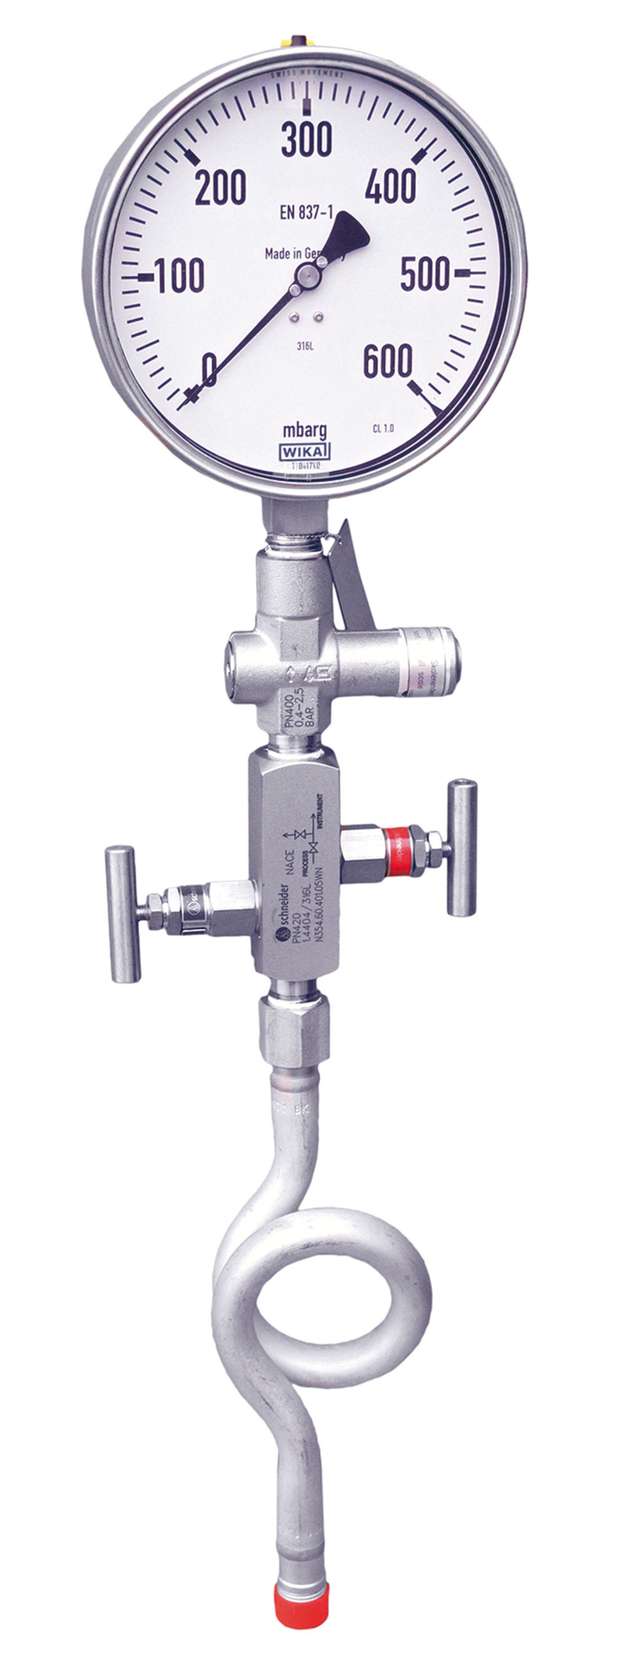 Das Manometer Hook-up mit Überdruckschutzvorrichtung, Nadelventil und Wassersackrohr kann mit minimalen Aufwand in den Prozess integriert werden.